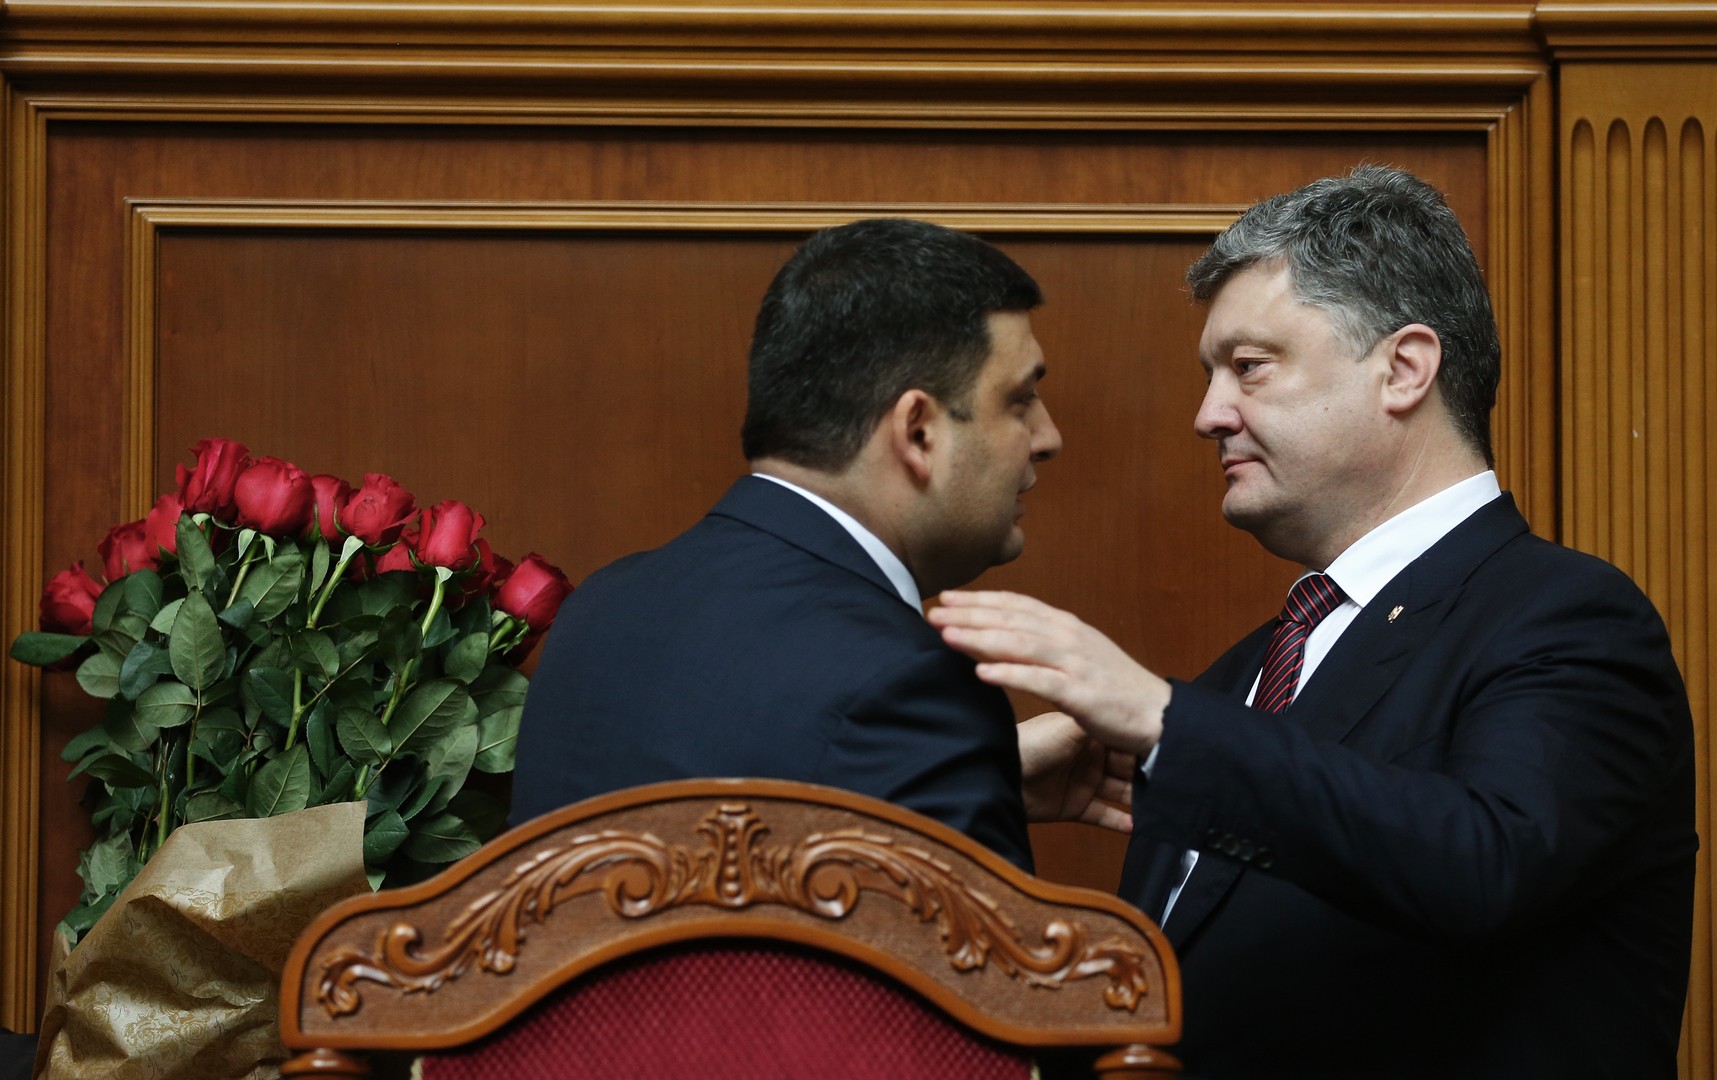 Allié de Porochenko, le nouveau Premier ministre ukrainien pourra-t-il lutter contre la corruption ?